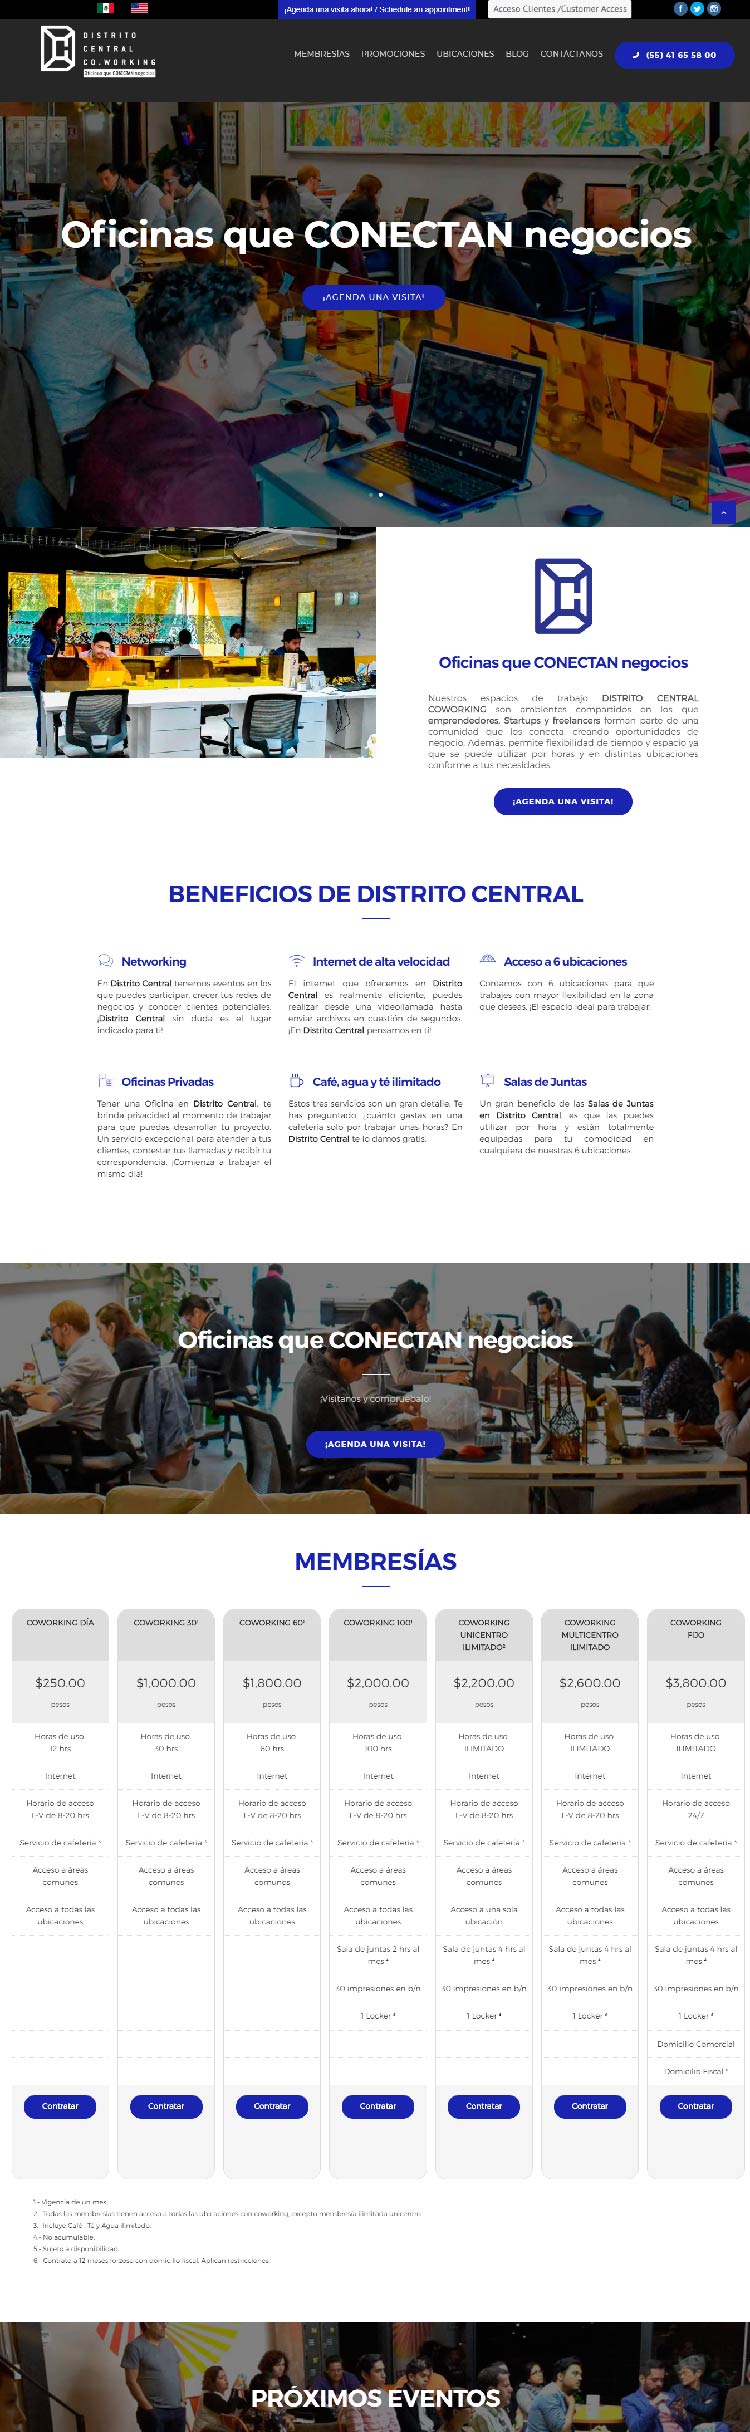 Diseño UI y desarrollo fronten para el sitio web de Distrito Central